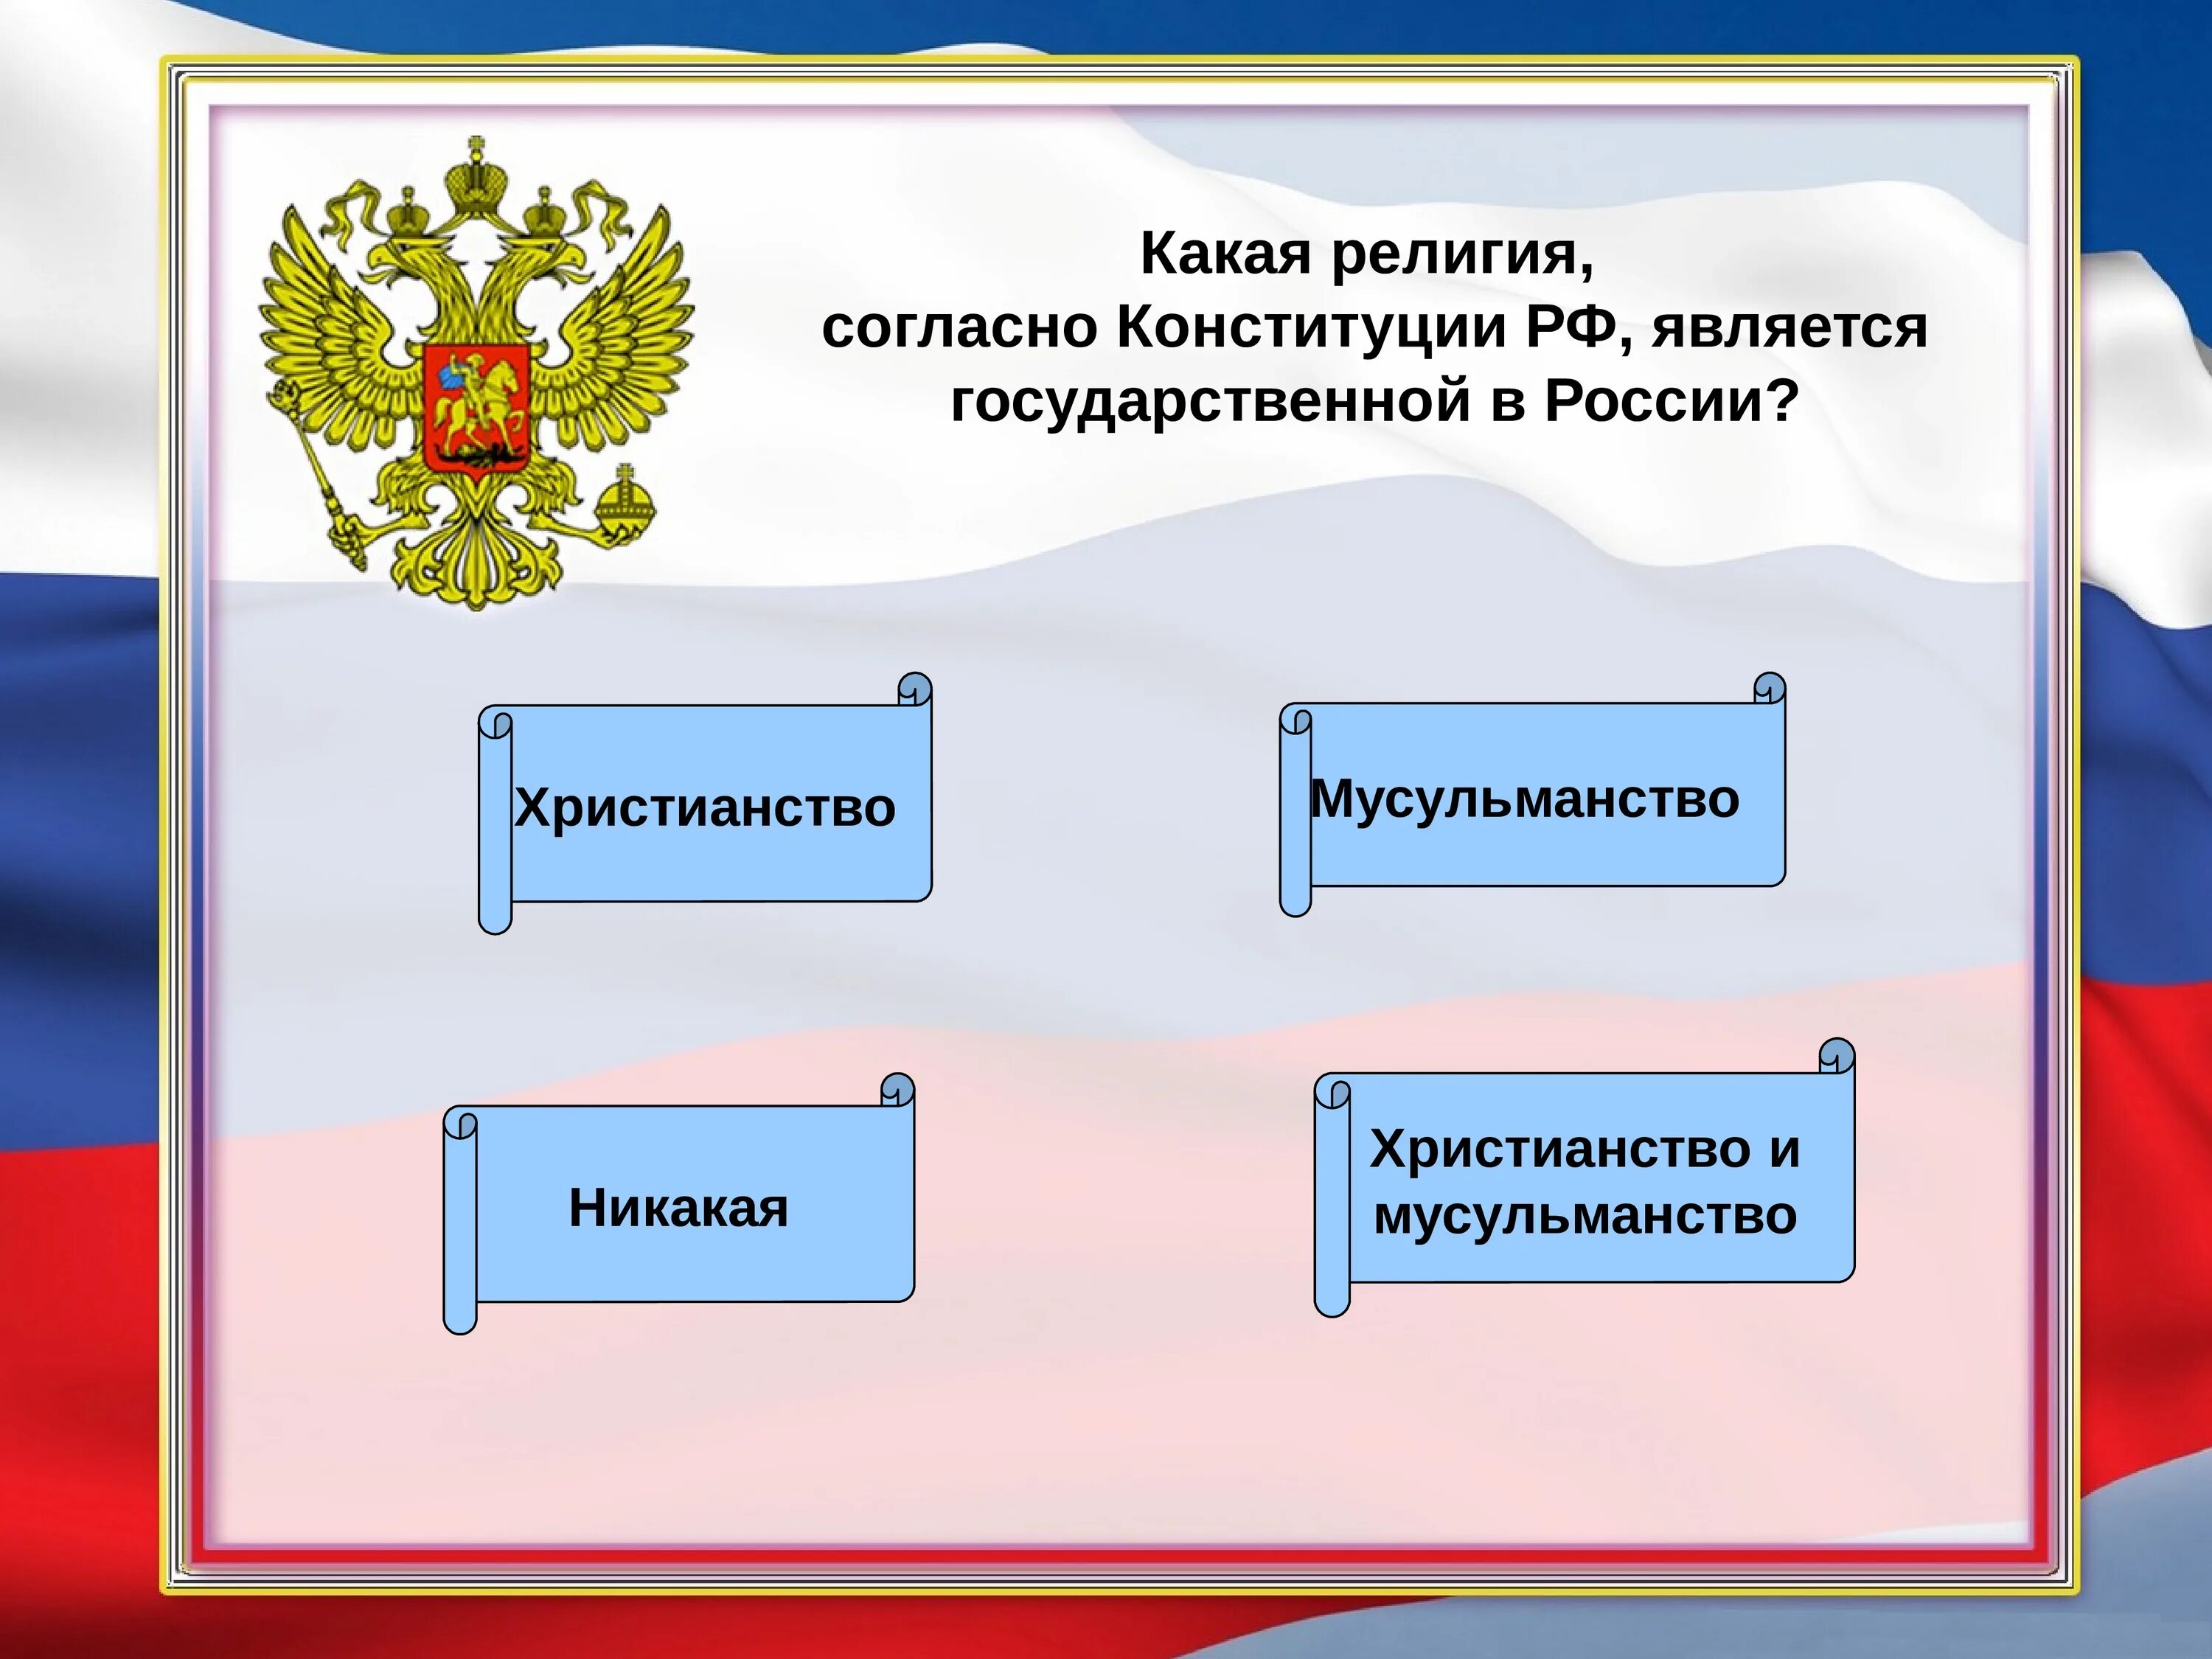 В рф является обязанным. Согласно Конституции РФ. Согласно Конституции Россия это. Государственная редлигия Росси.